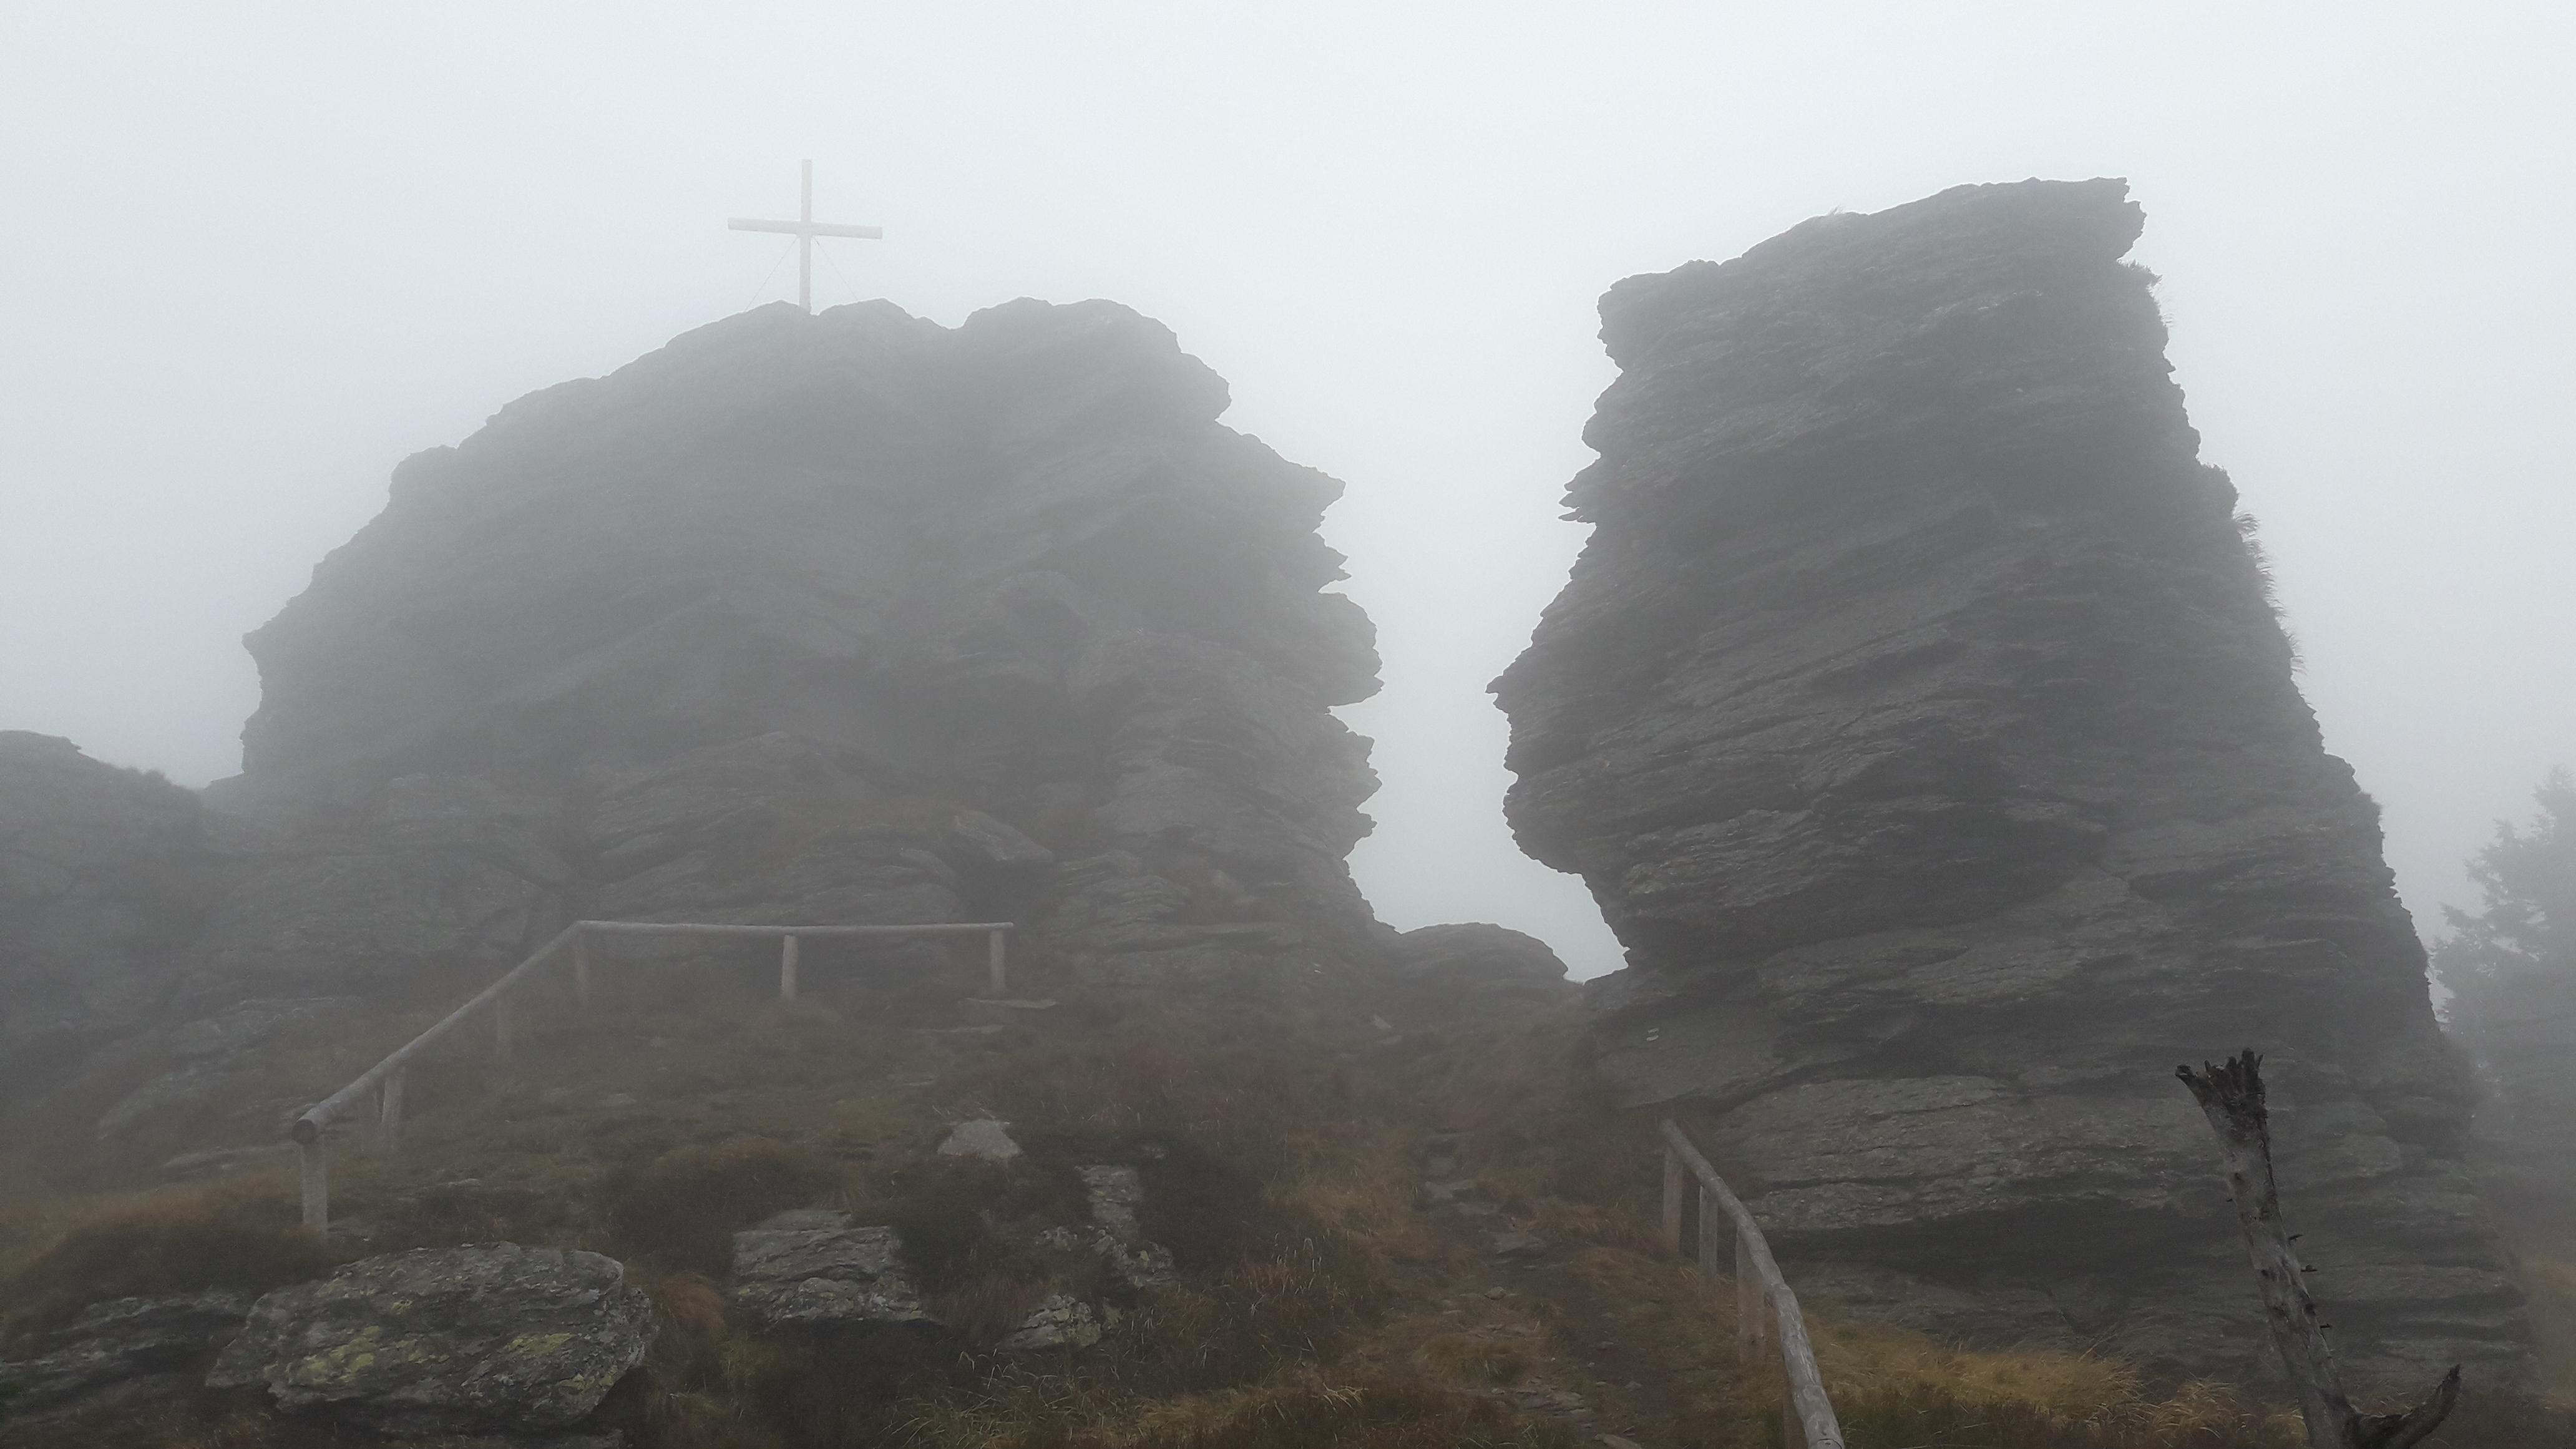 Vyjádření AOPK ČR k umístění dřevěného kříže na vrcholové skále Vozky